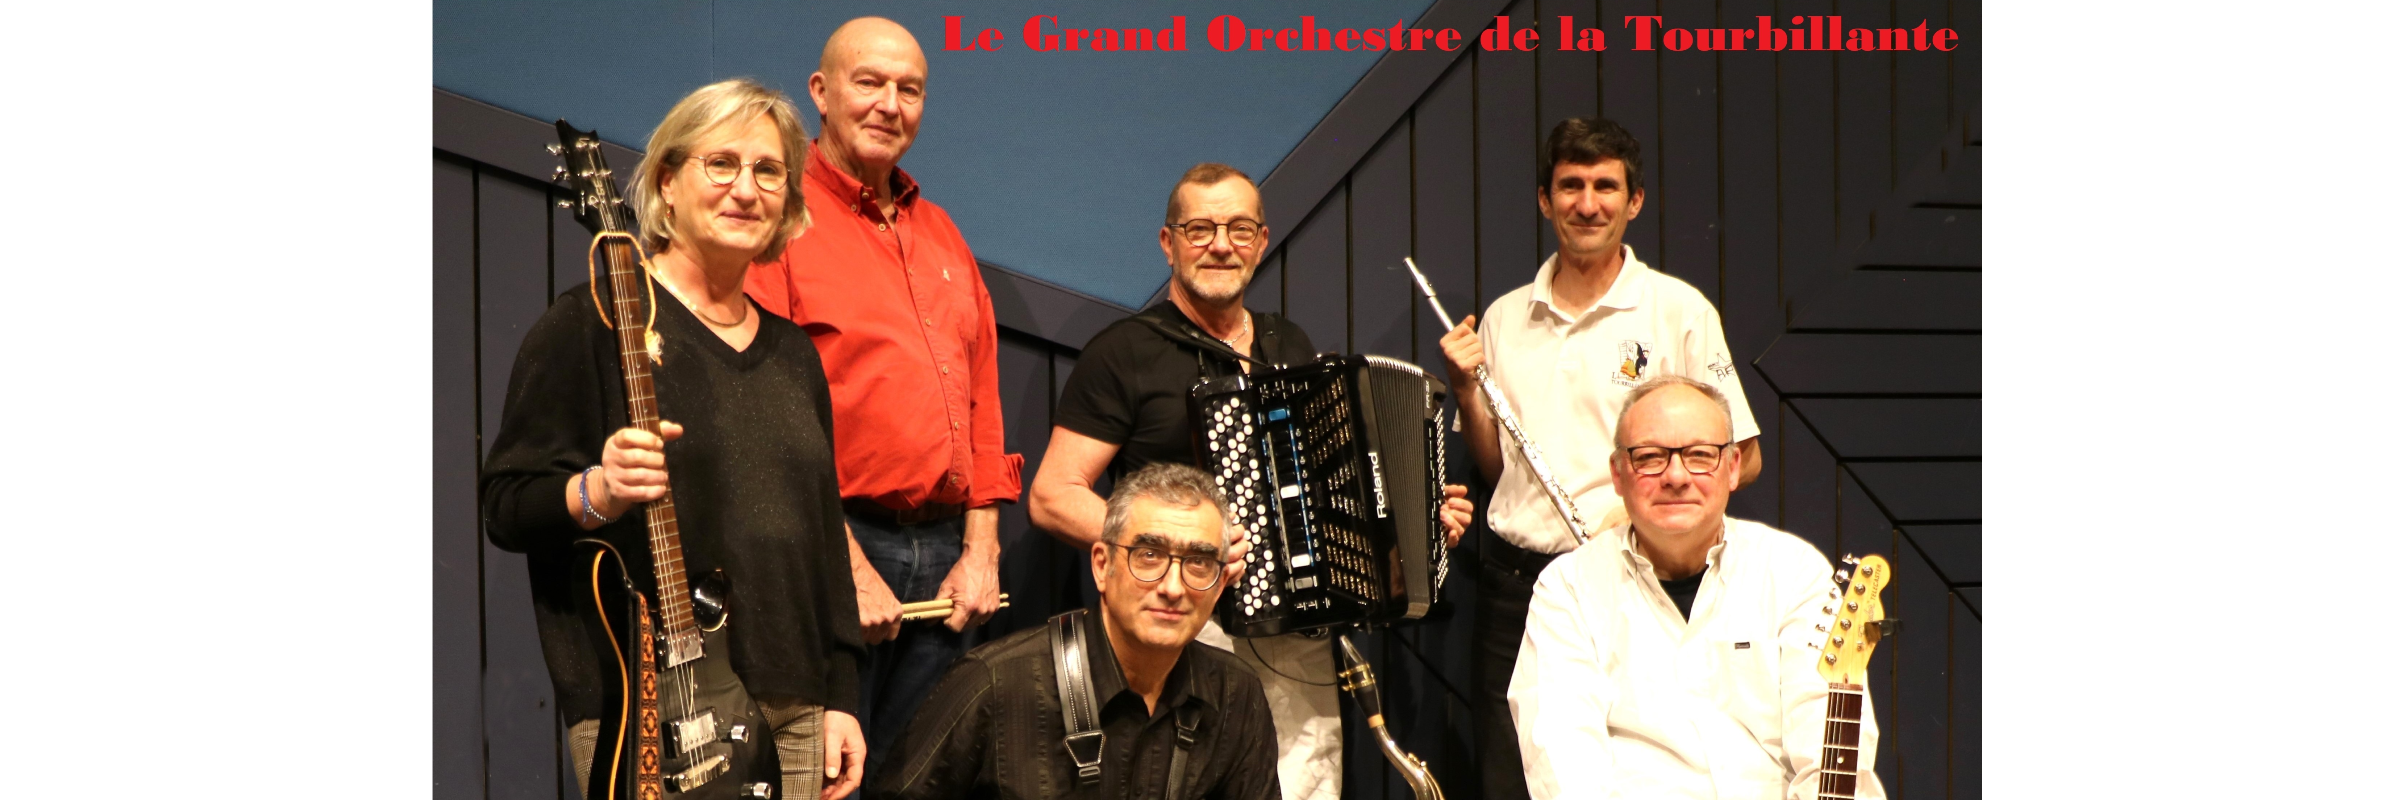 Le Grand Orchestre de la Tourbillante, groupe de musique Pop en représentation à Rhône - photo de couverture n° 5